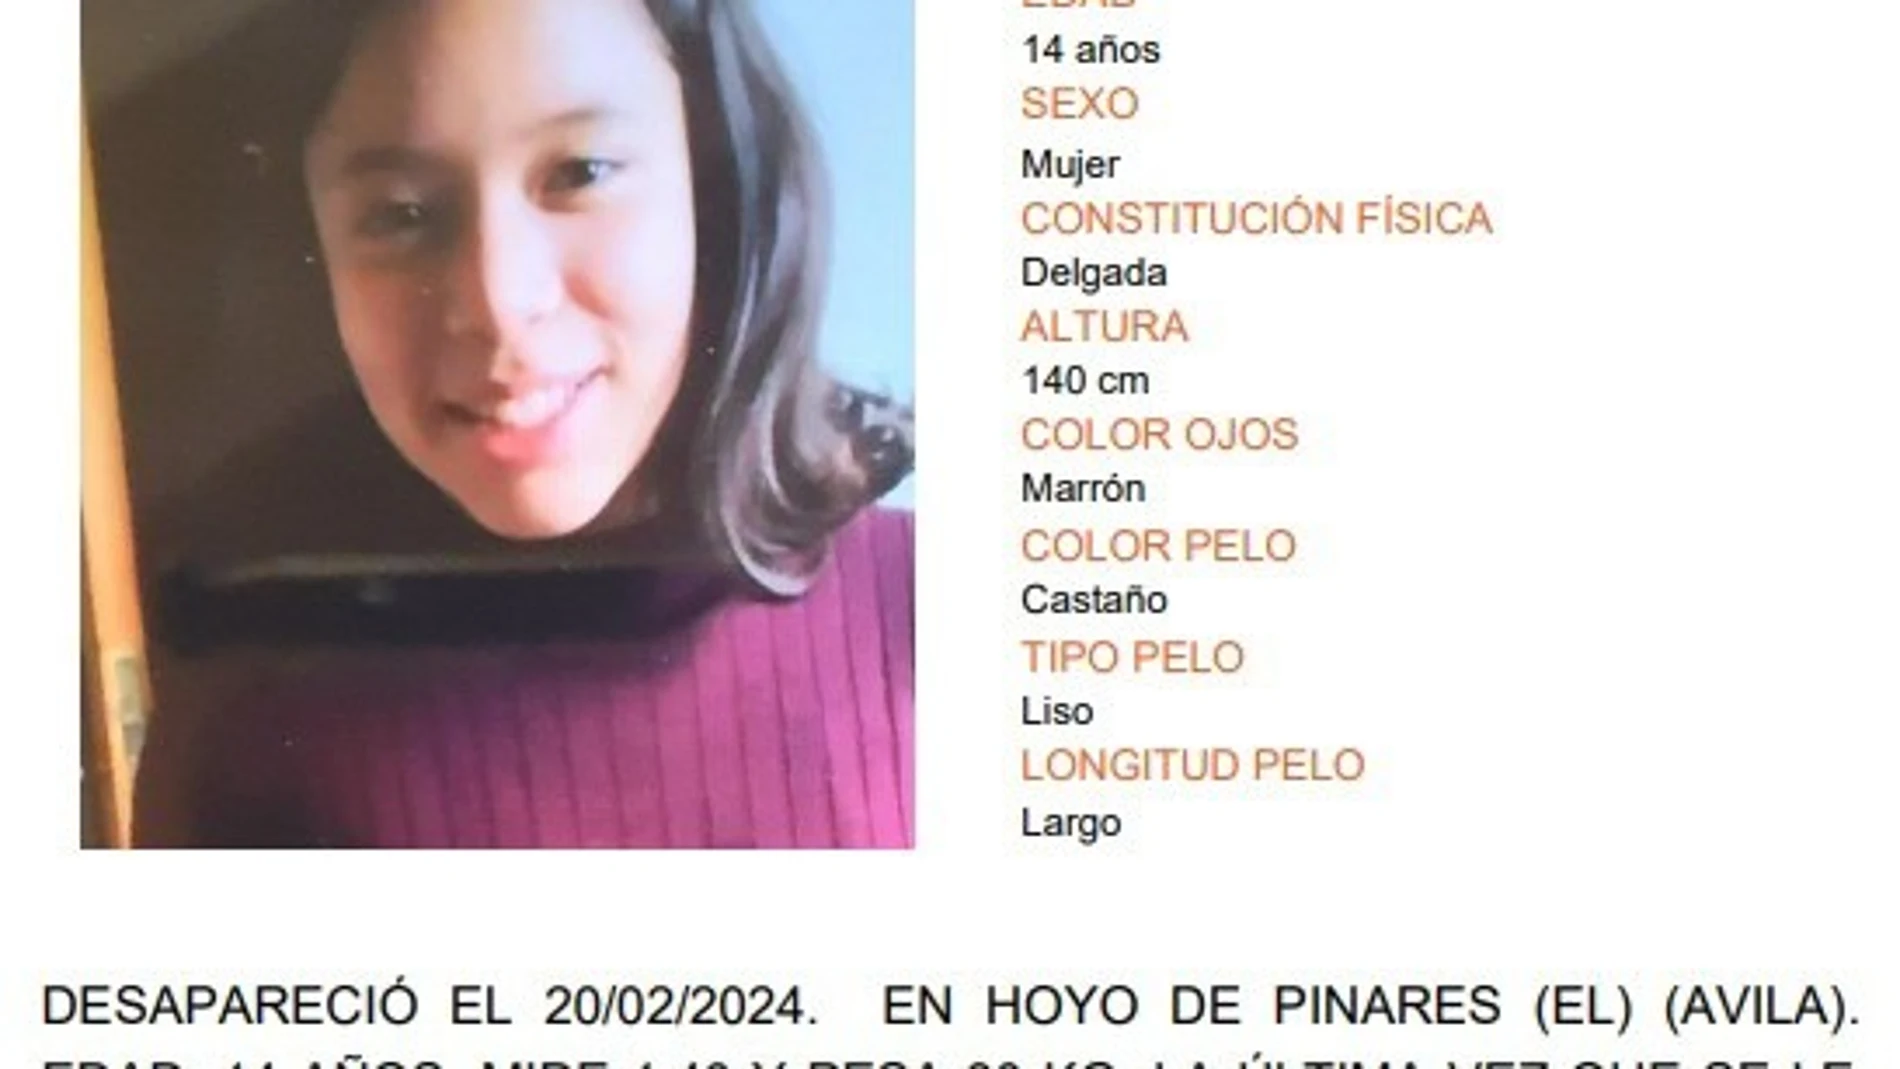 Buscan a una menor de 14 años desaparecida desde el martes en Hoyo de Pinares (Ávila) SUBDELEGACIÓN DEL GOBIERNO 21/02/2024